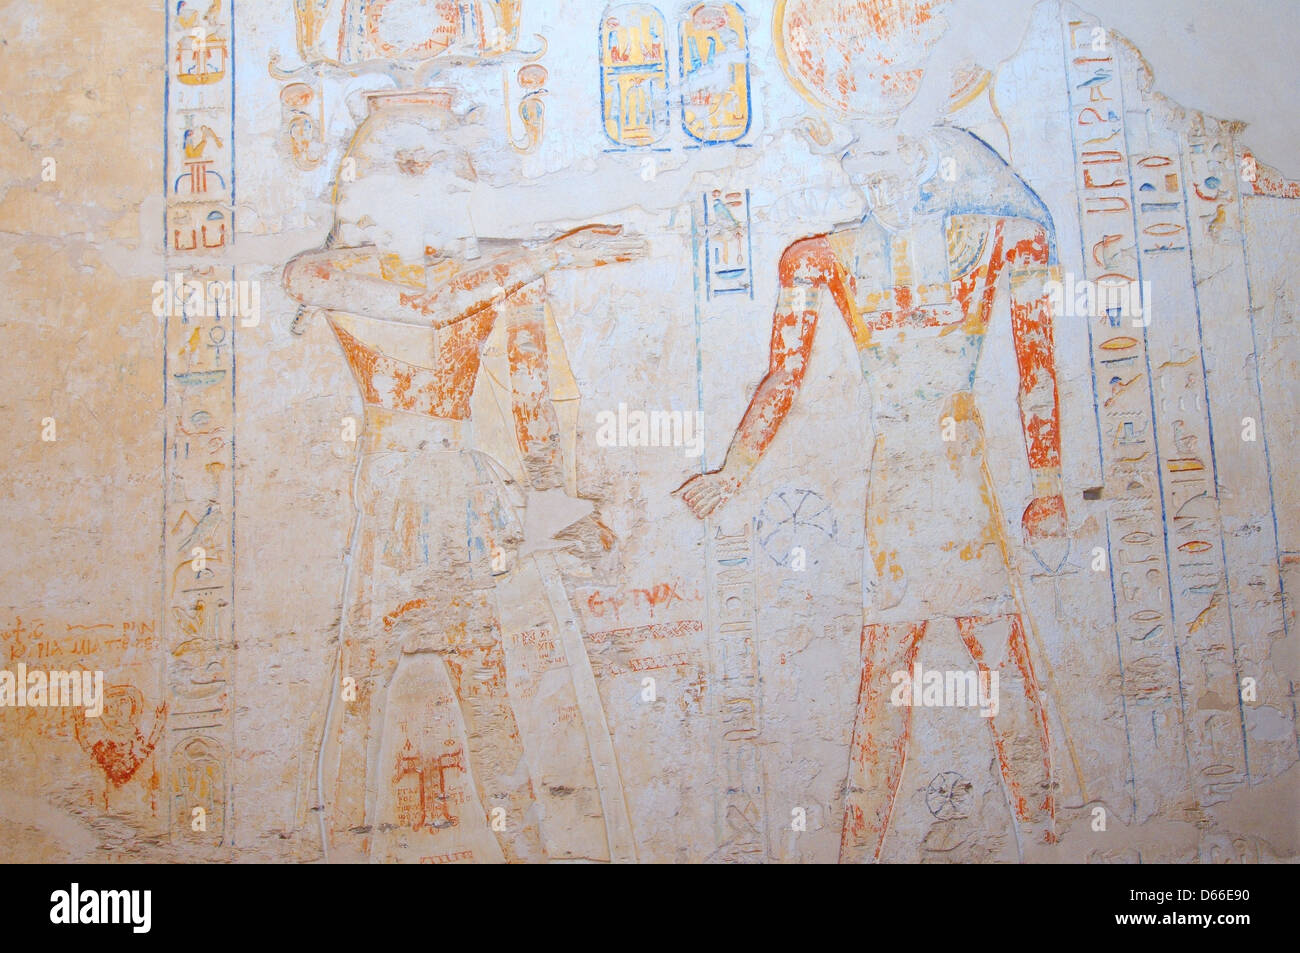 El interior de Ramsés IV KV2 tumba real, este valle de los Reyes, Luxor (Tebas), Egipto, África Foto de stock